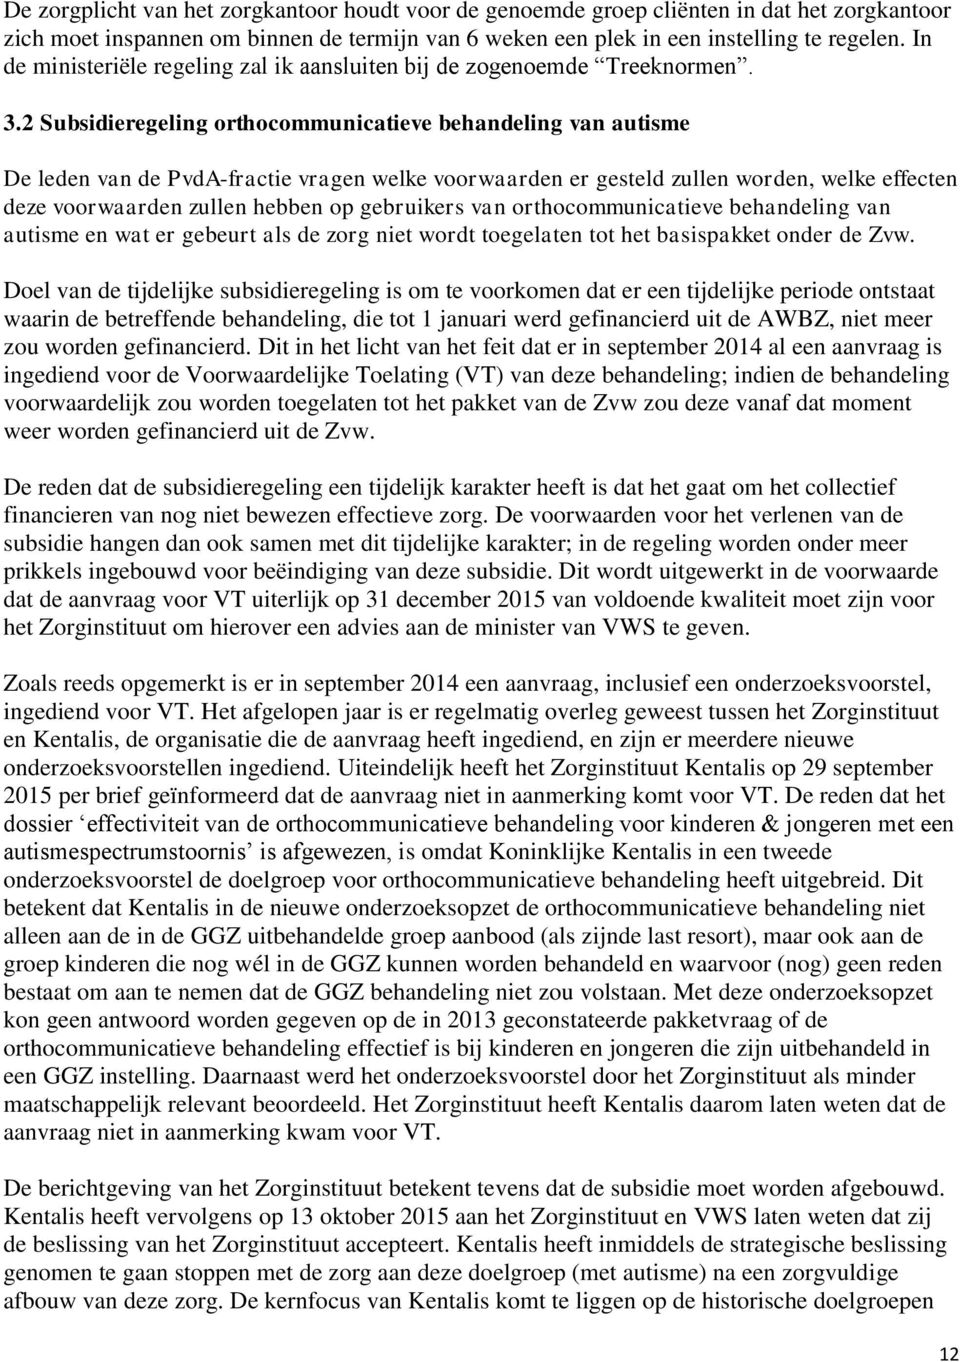 2 Subsidieregeling orthocommunicatieve behandeling van autisme De leden van de PvdA-fractie vragen welke voorwaarden er gesteld zullen worden, welke effecten deze voorwaarden zullen hebben op